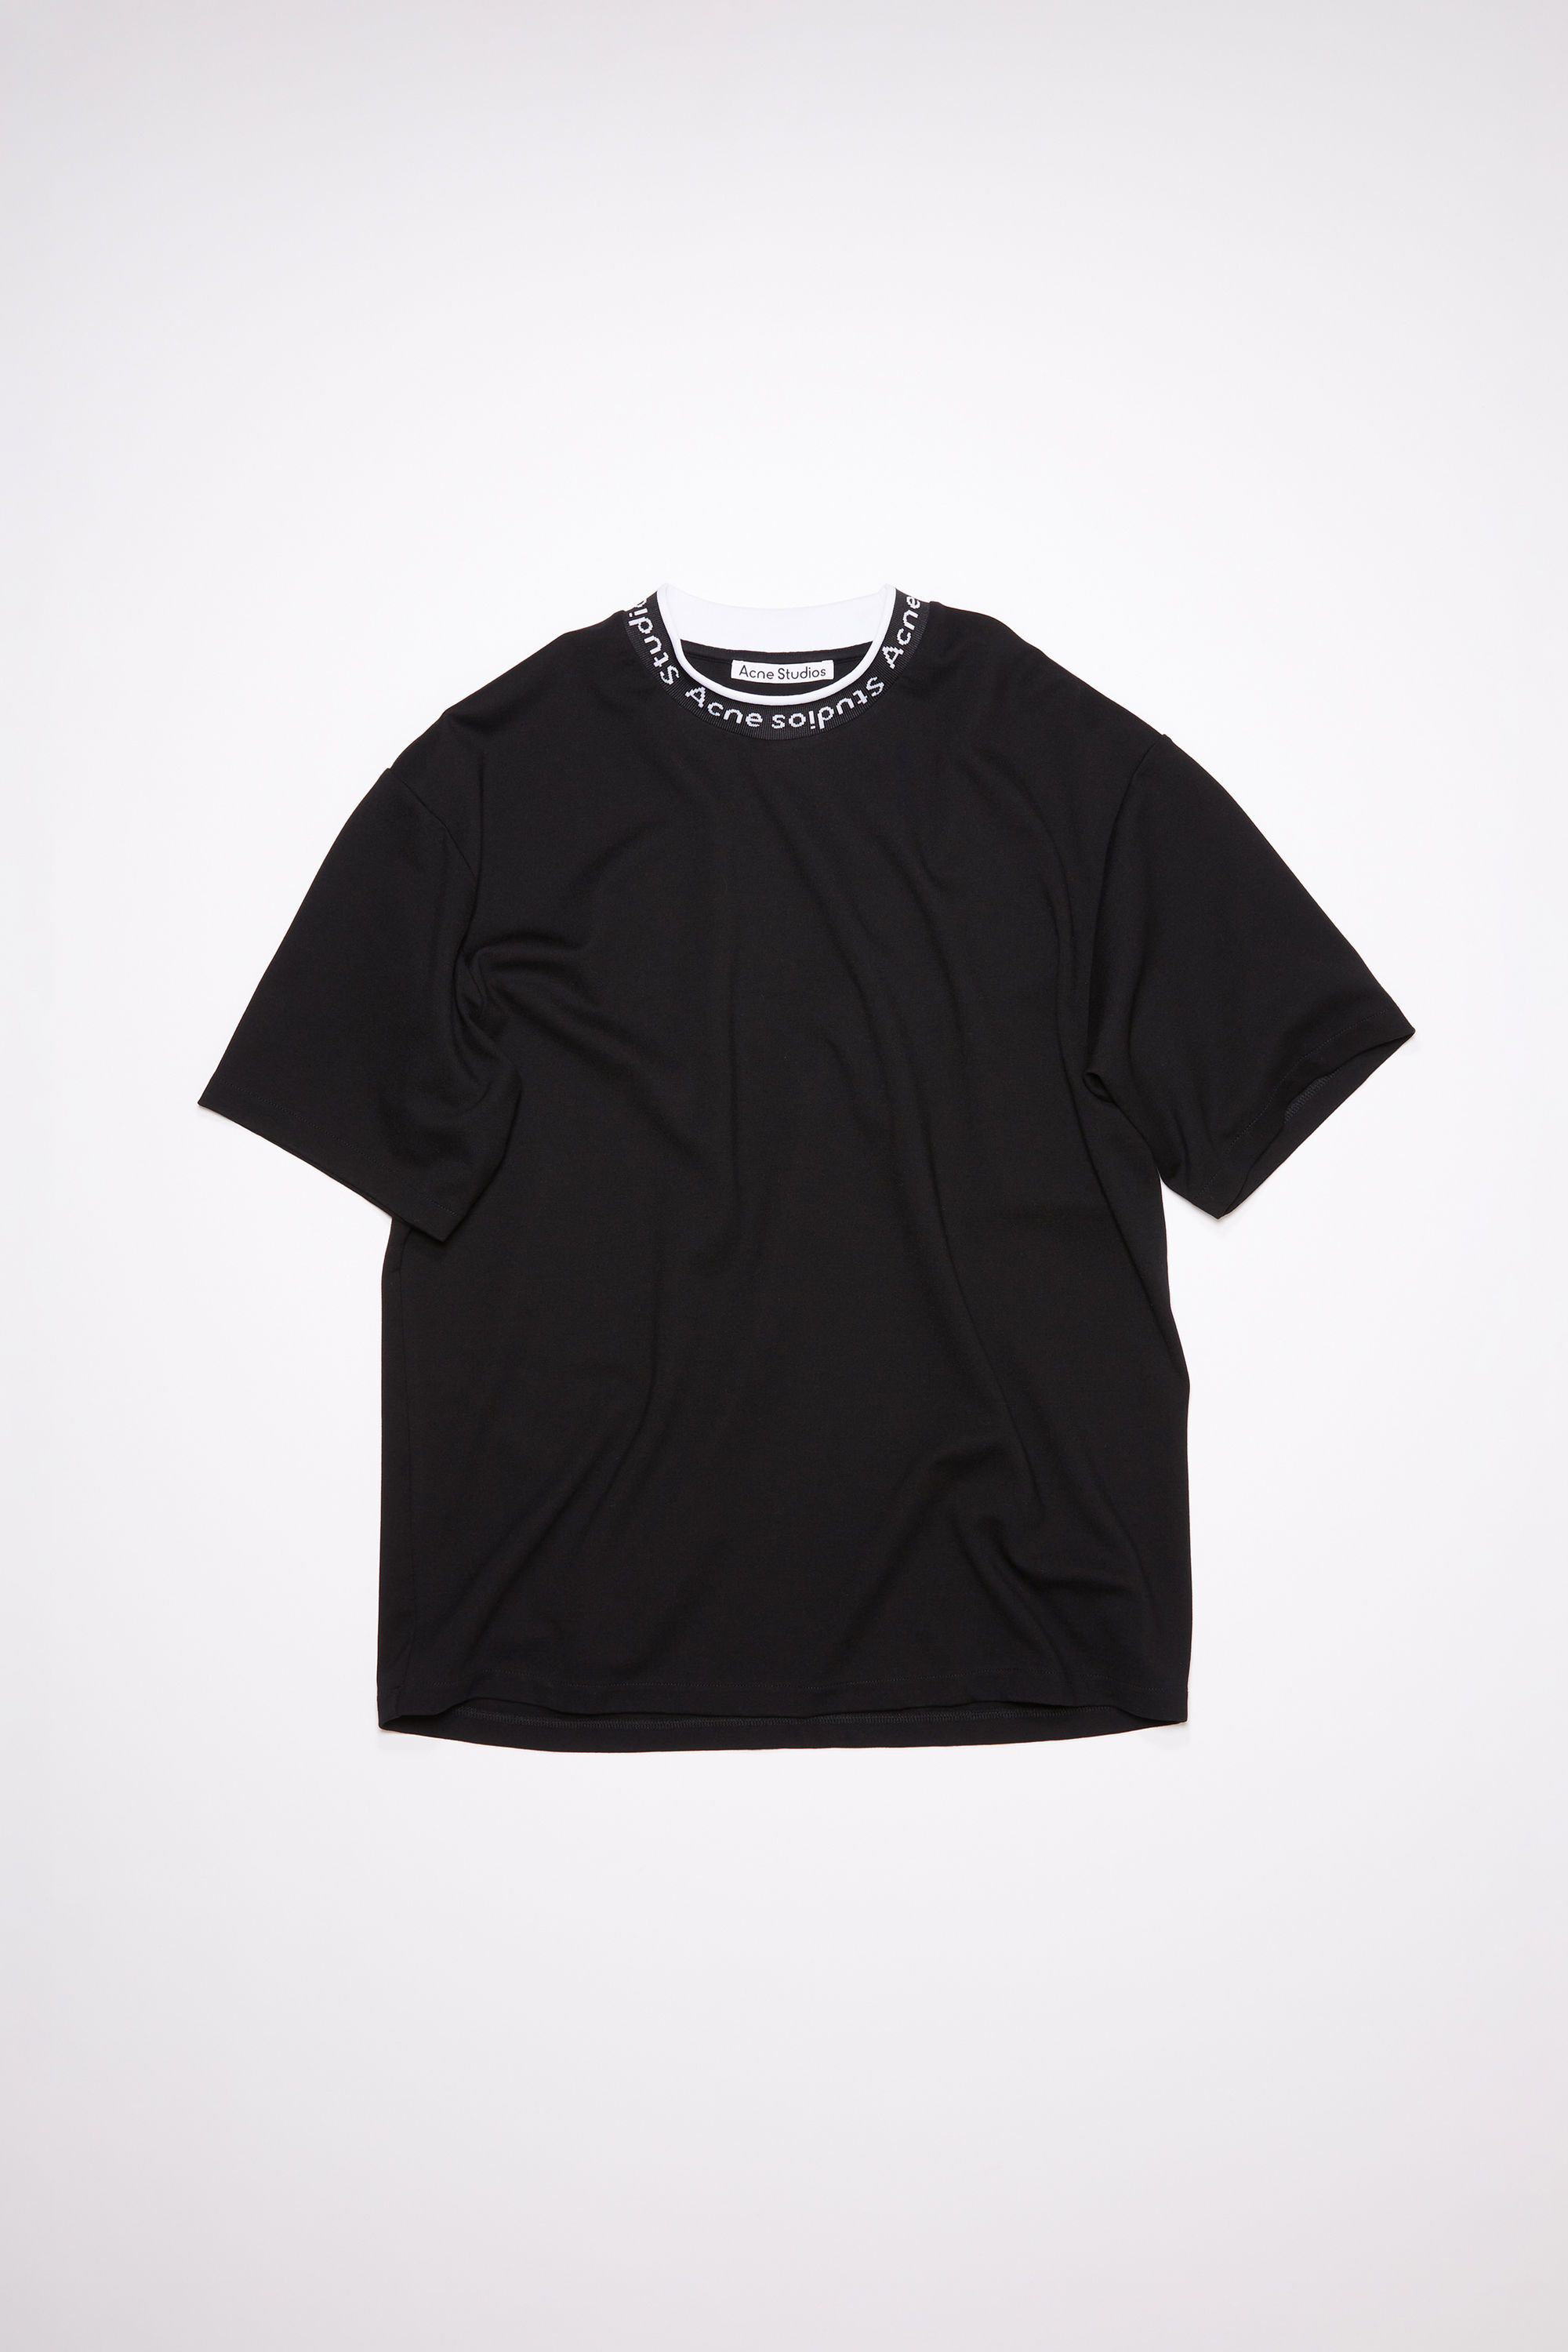 Acne studios ロゴリブT - Tシャツ/カットソー(半袖/袖なし)